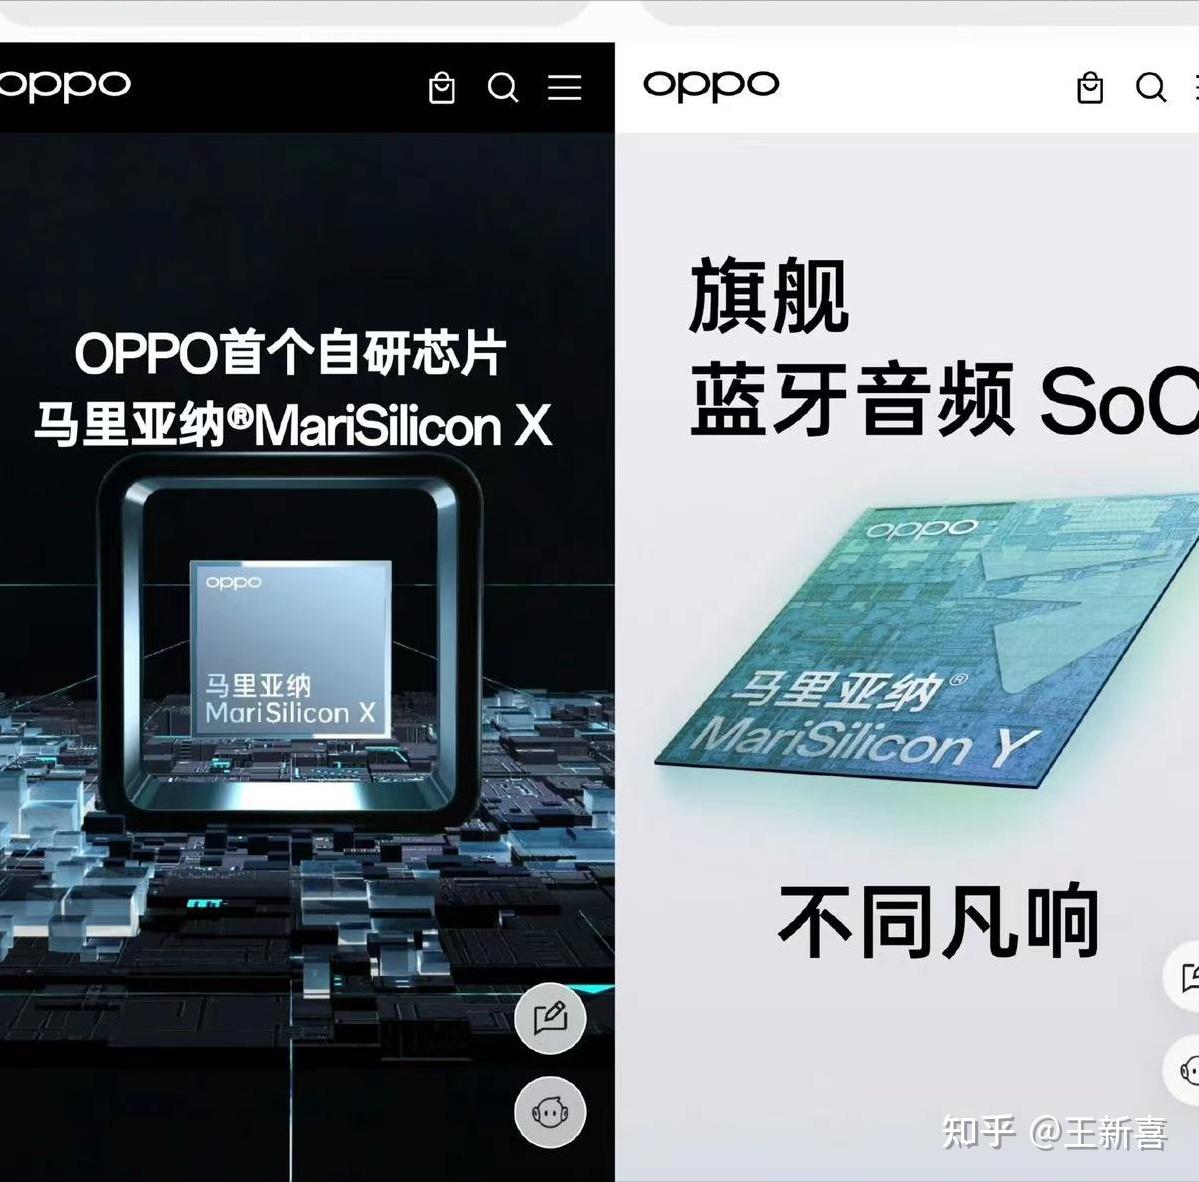 中国手机OPPO解散芯片公司 三千人丢饭碗 – 博讯新闻网